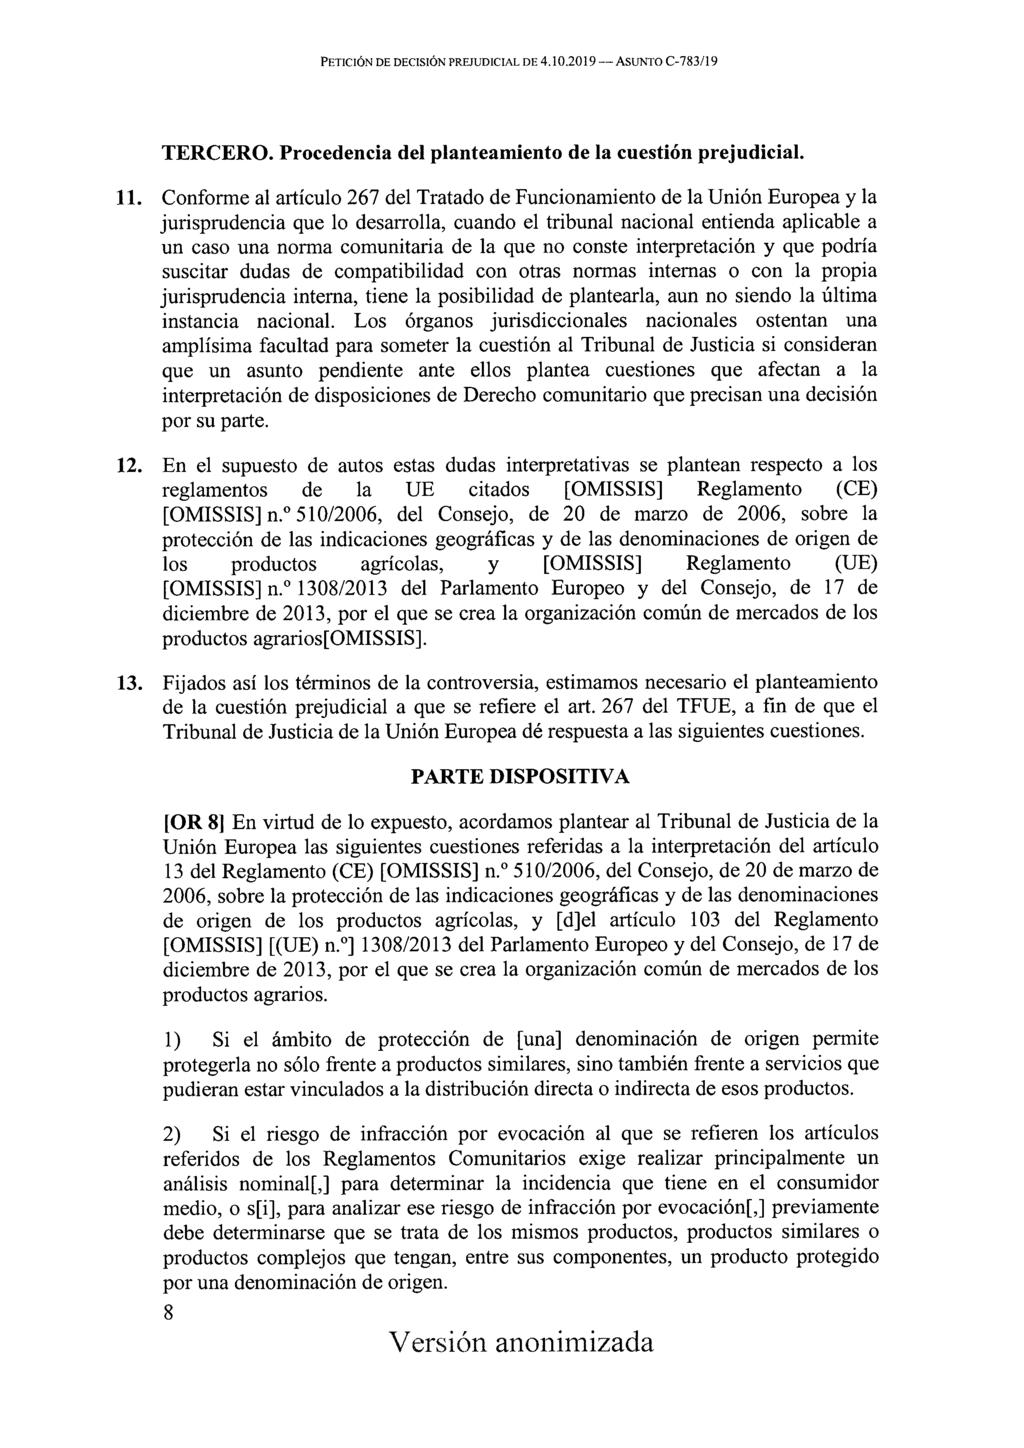 Petición de decisión prejudicial de 4.10.2019 Asunto C-783/19 TERCERO. Procedencia del planteamiento de la cuestión prejudicial. 11.